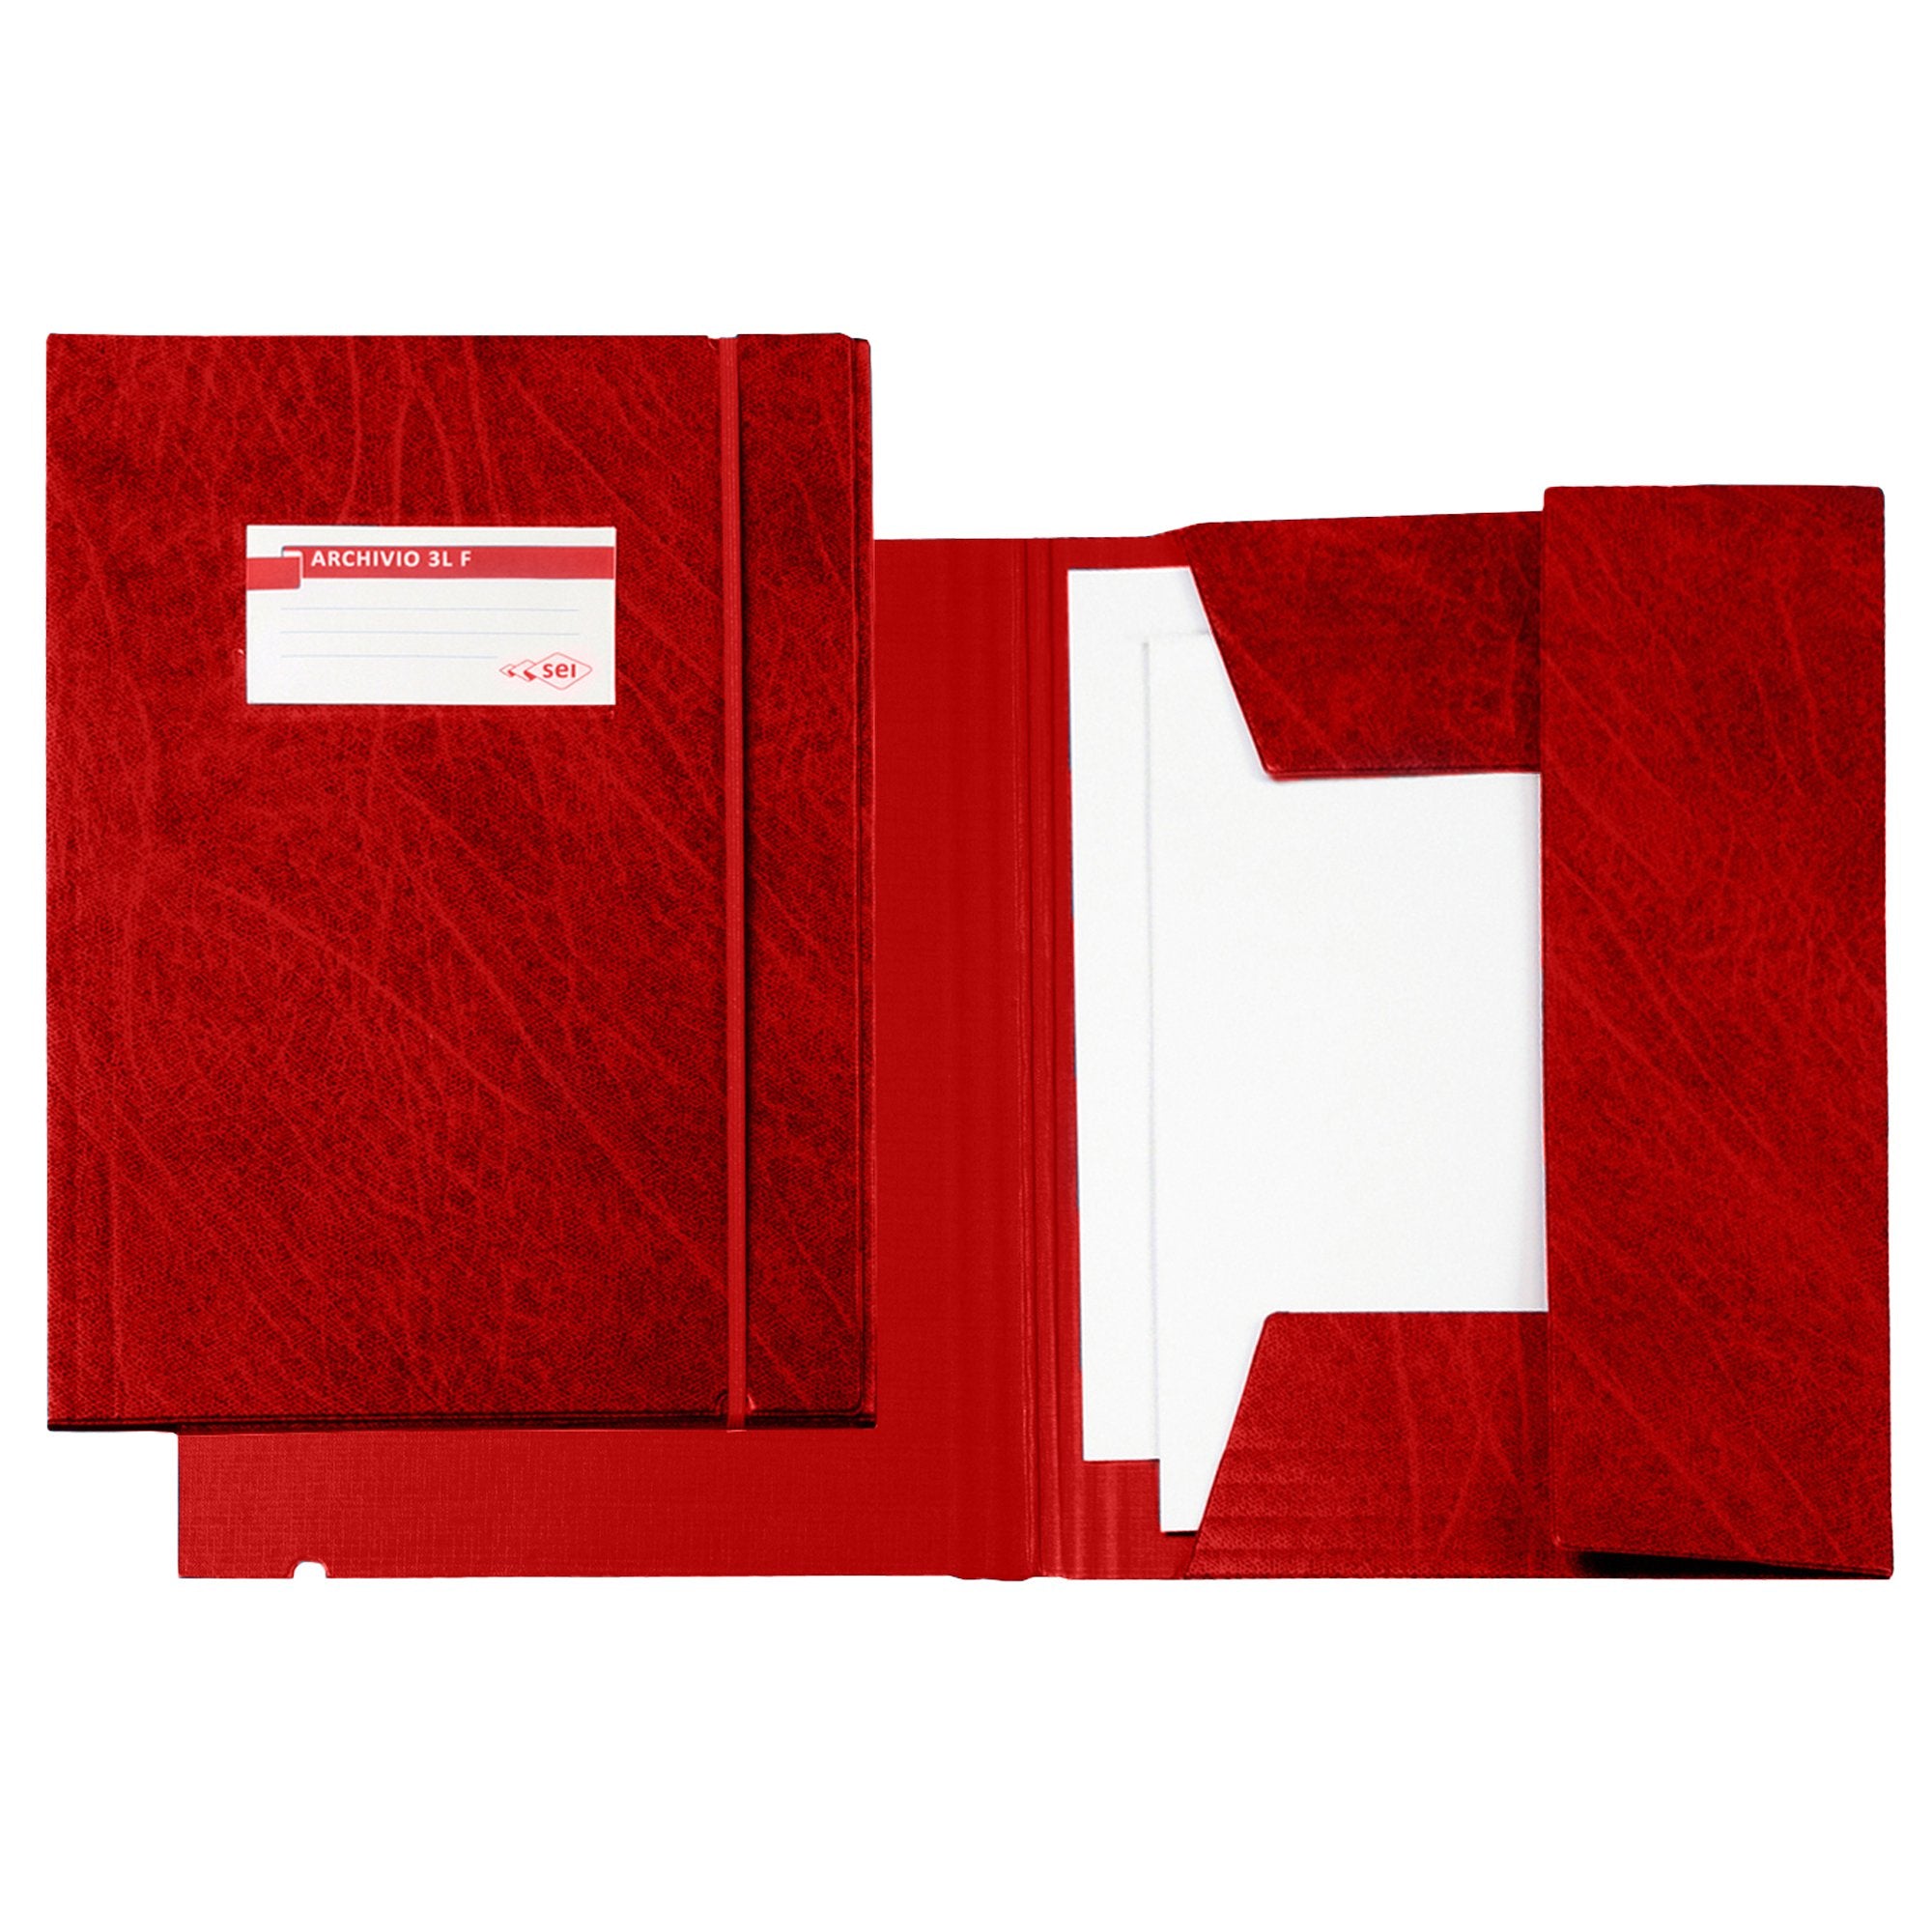 sei-rota-cartellina-archivio-3l-f-rosso-25x35cm